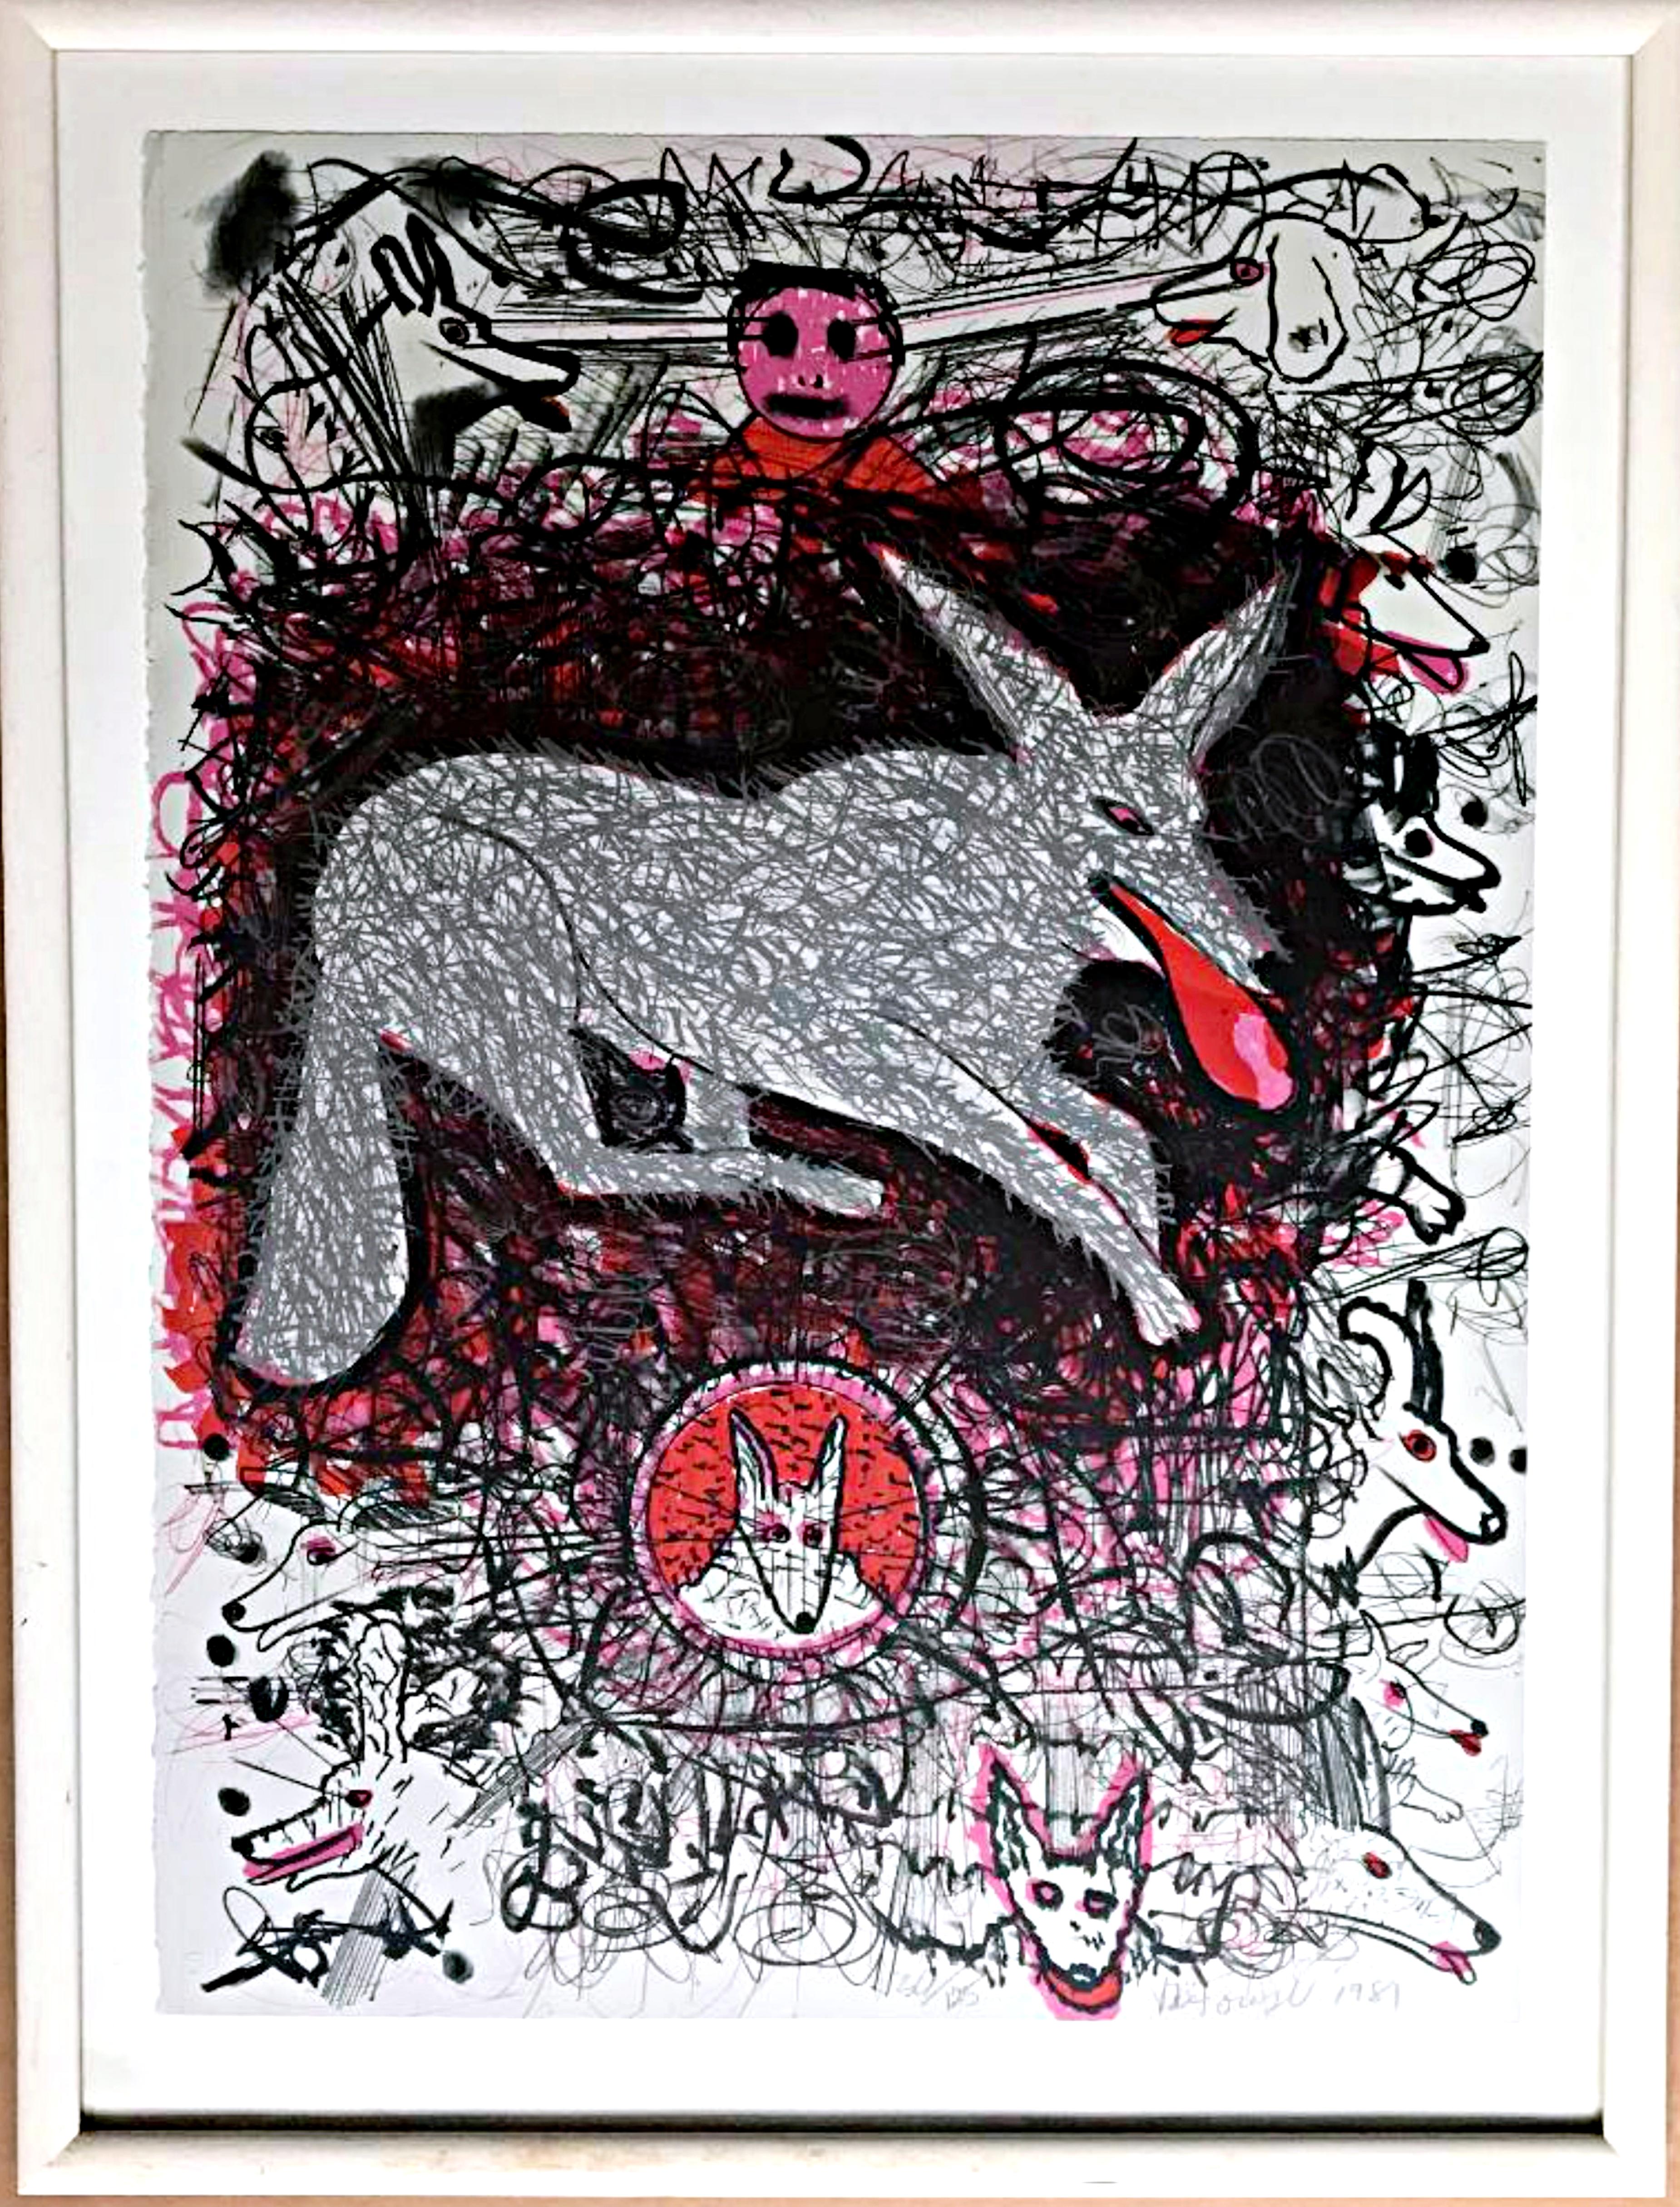 Animal Print Roy De Forest - Impression de chiens par le peintre Funk californien « noyer art », mondialement connu pour ses portraits de chiens